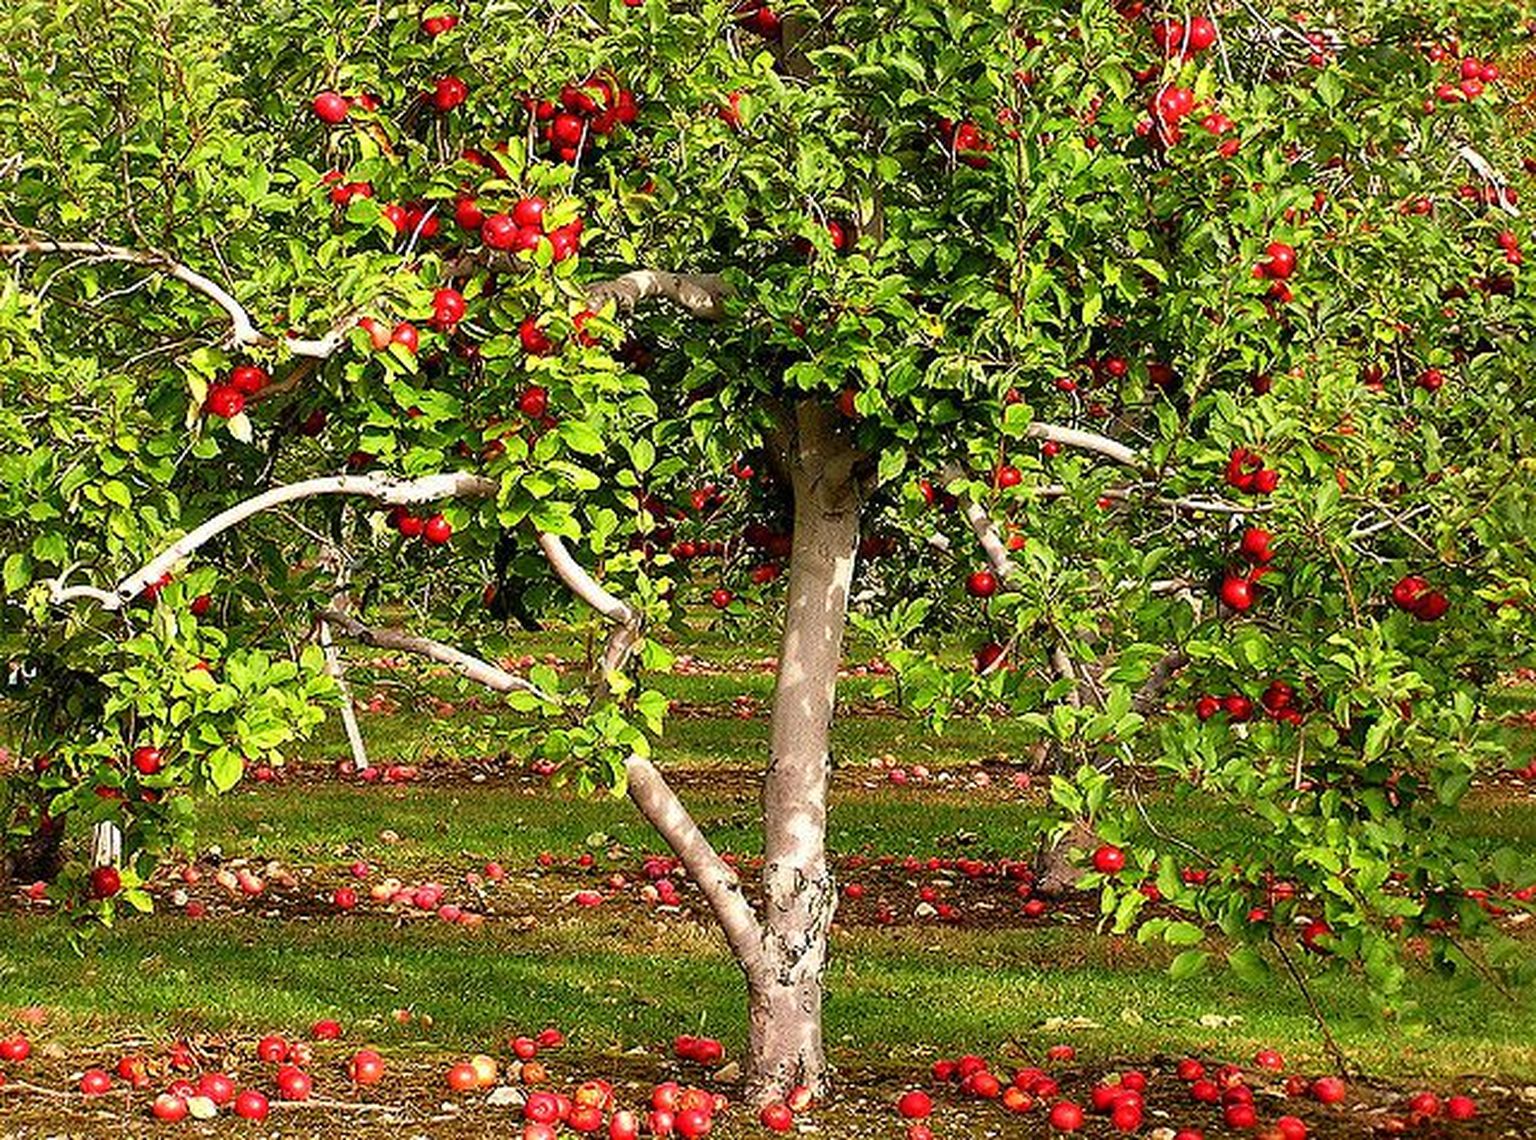 Õunad puu all.